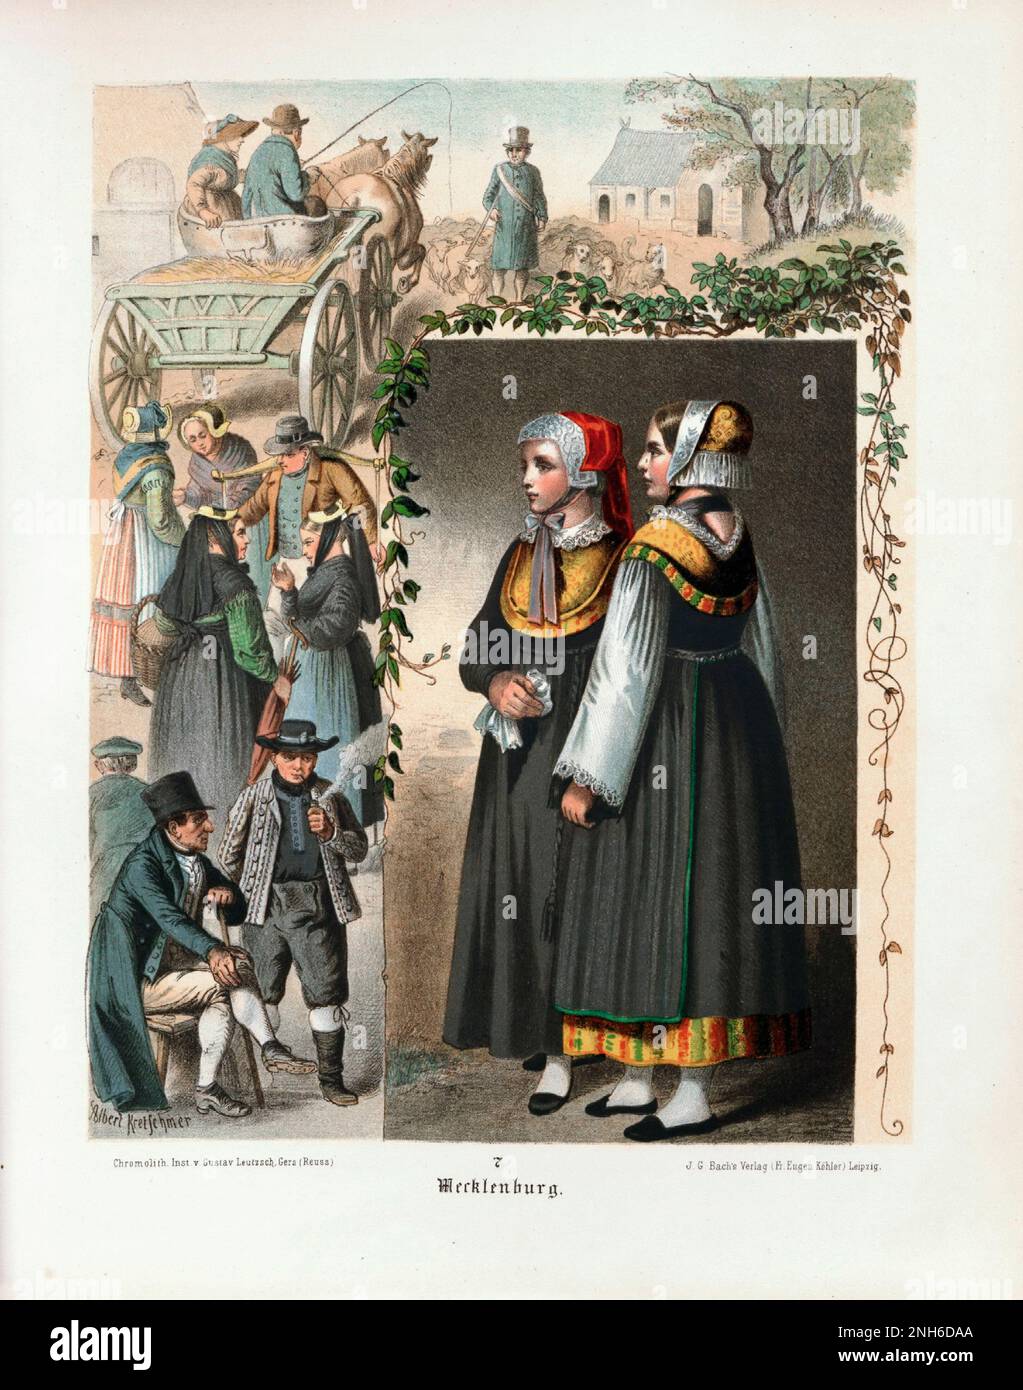 Disfraz folclórico alemán. Mecklemburgo. litografía del siglo 19th. Foto de stock